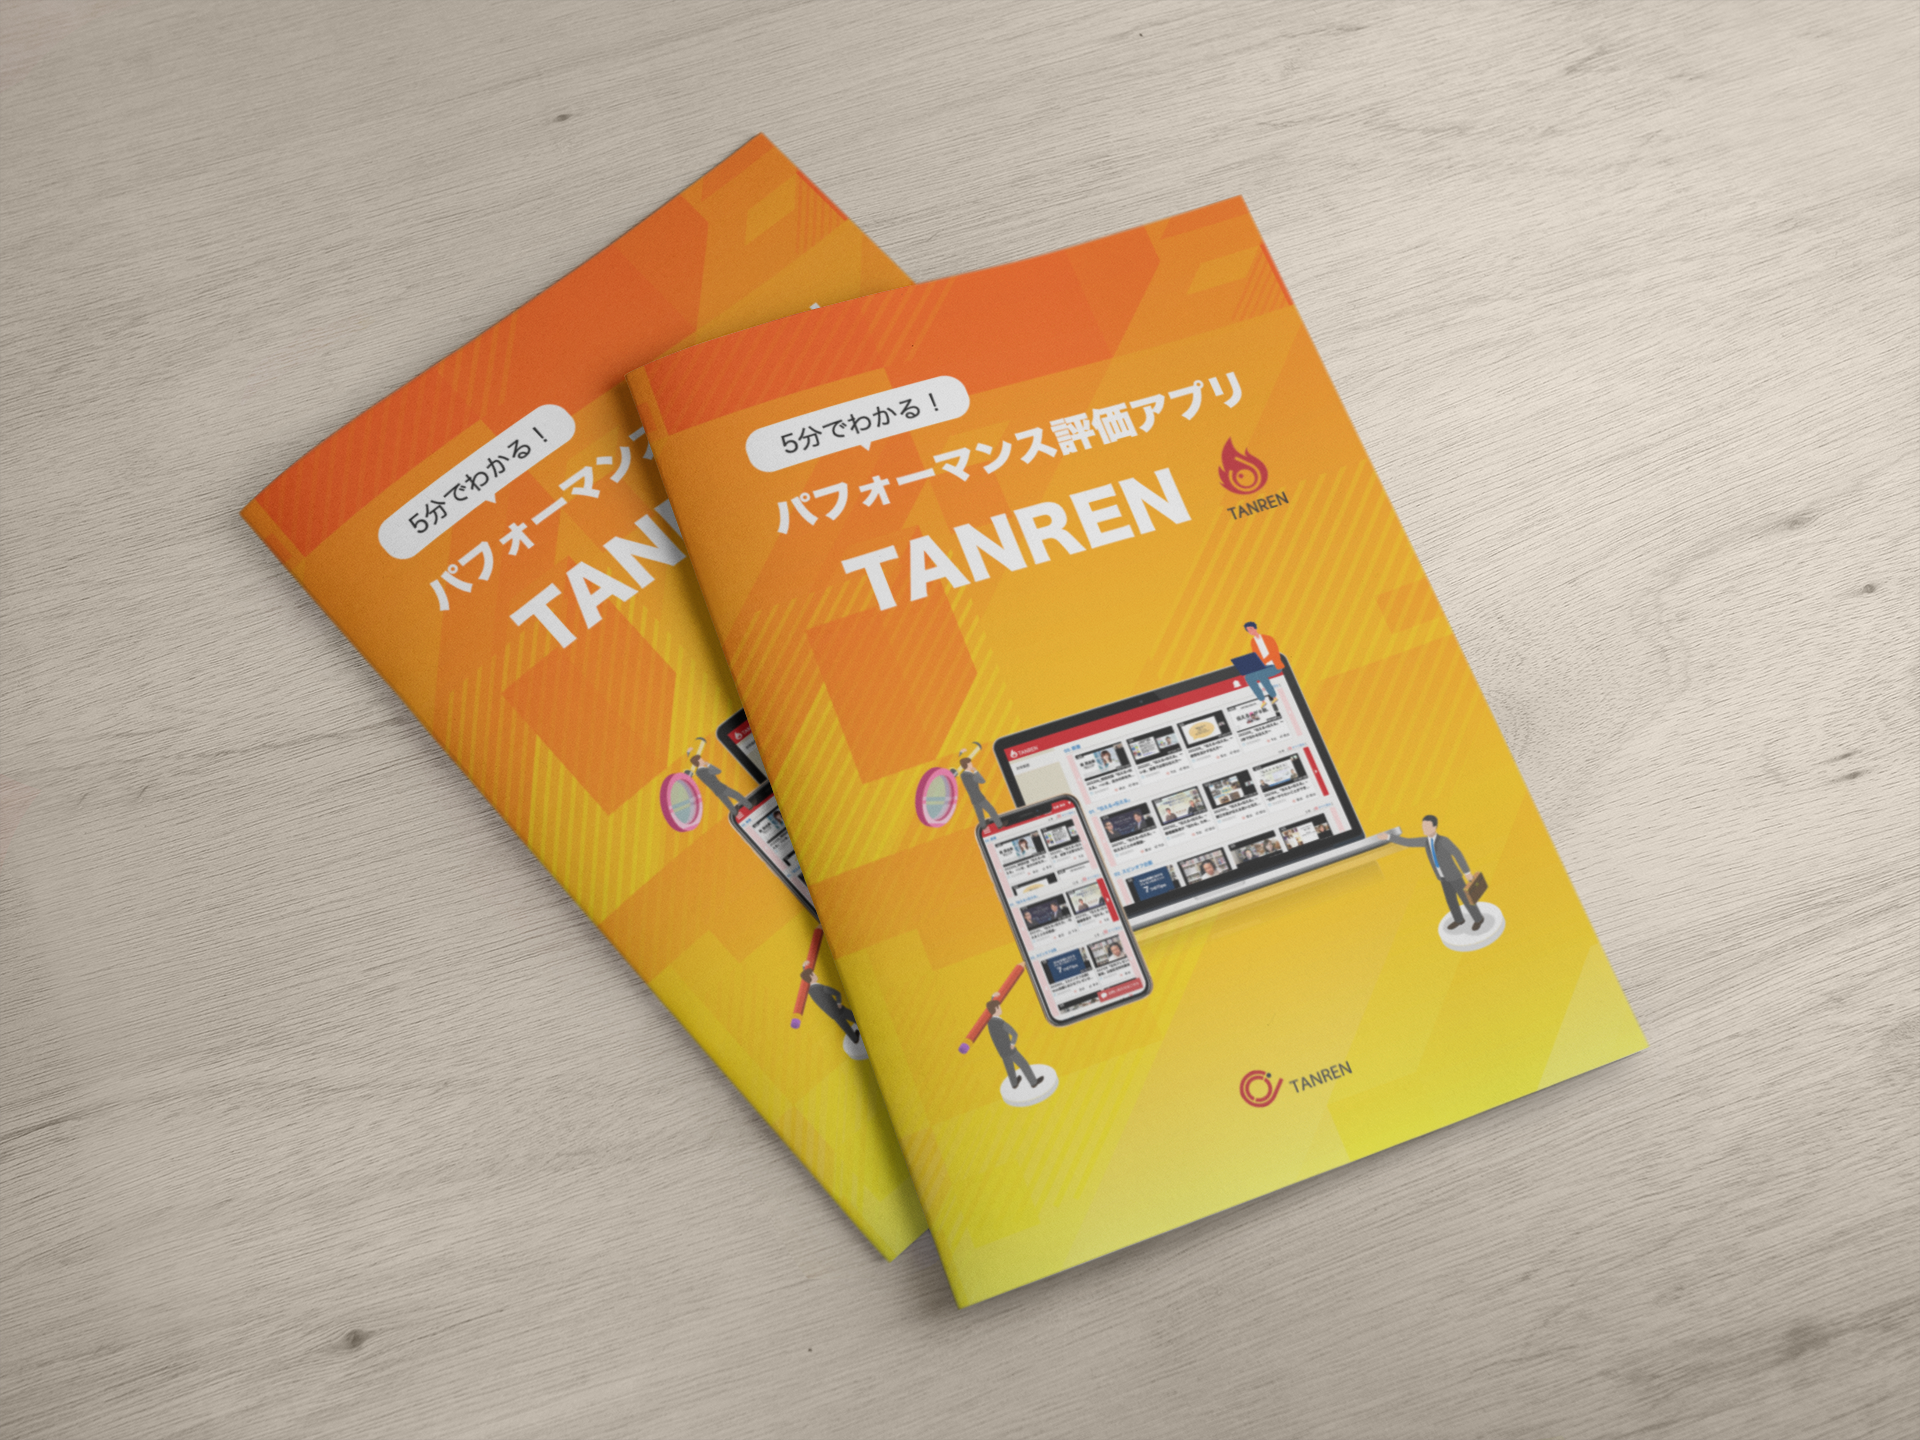 パフォーマンス評価アプリ TANREN 資料